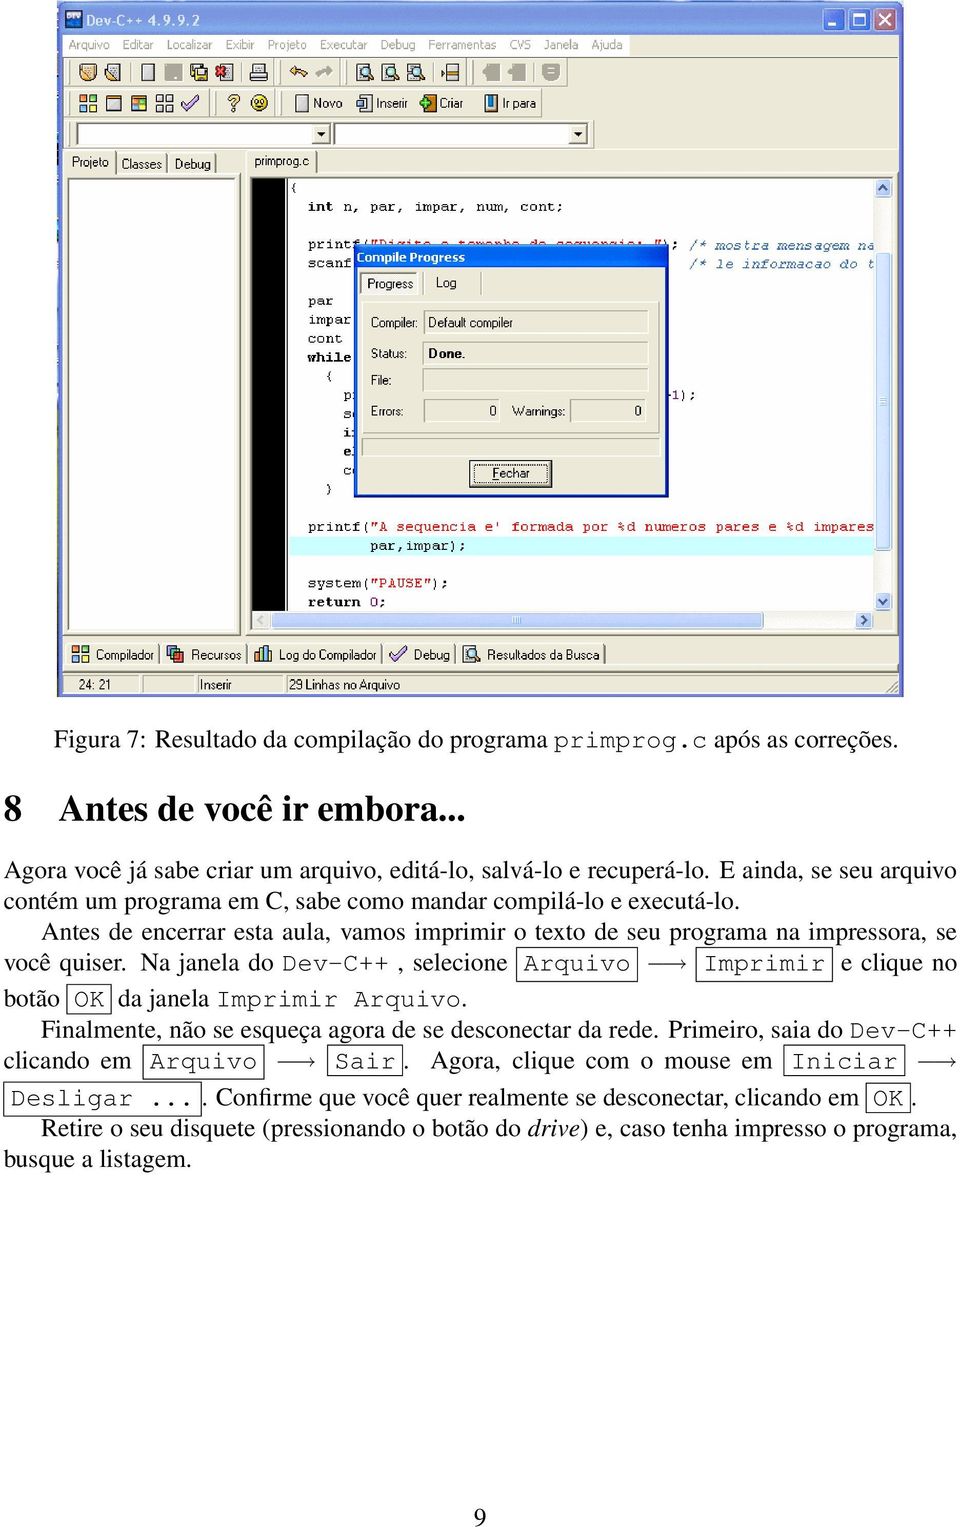 Na janela do Dev-C++, selecione Arquivo Imprimir e clique no botão OK da janela Imprimir Arquivo. Finalmente, não se esqueça agora de se desconectar da rede.